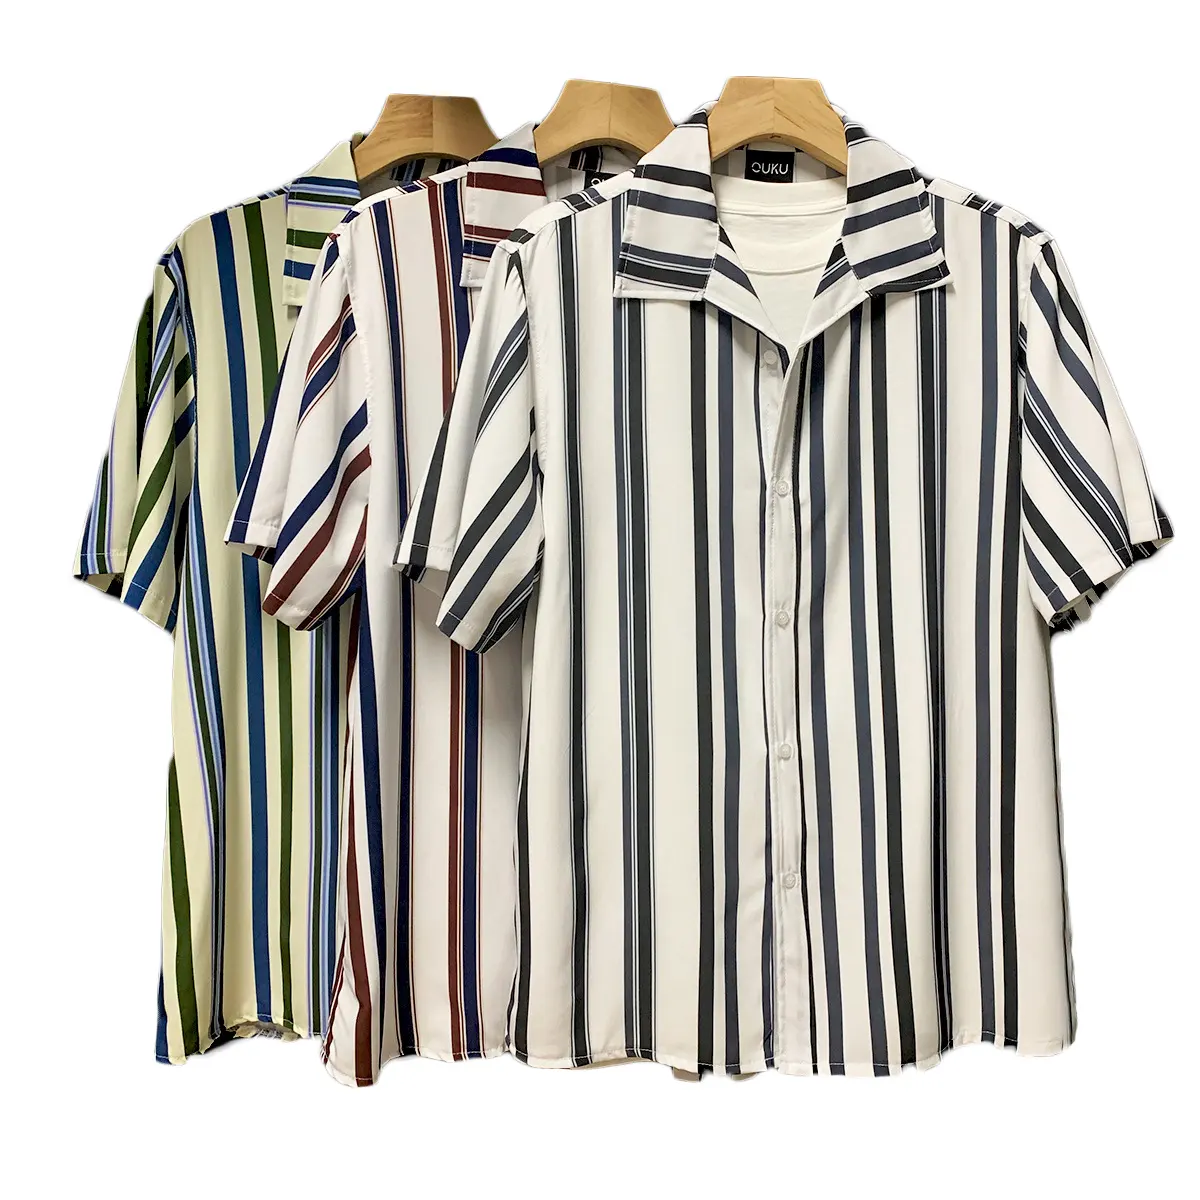 Verano hielo seda Cuba cuello parejas Camisa estampada de manga corta Hawaii playa camisa suelta camisa casual